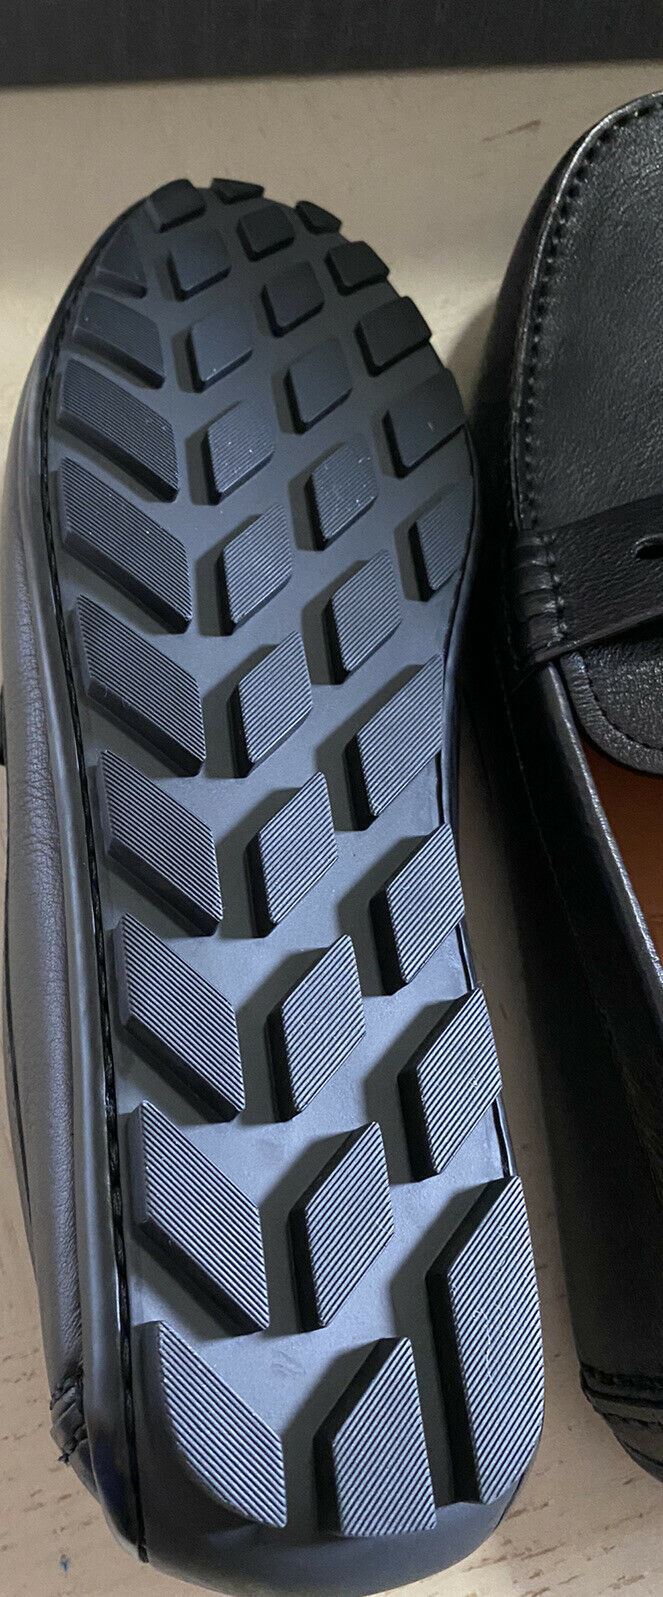 Neu $ 625 Ermenegildo Zegna Herren Leder Driver Loafers Schuhe Schwarz 10,5 US Italien